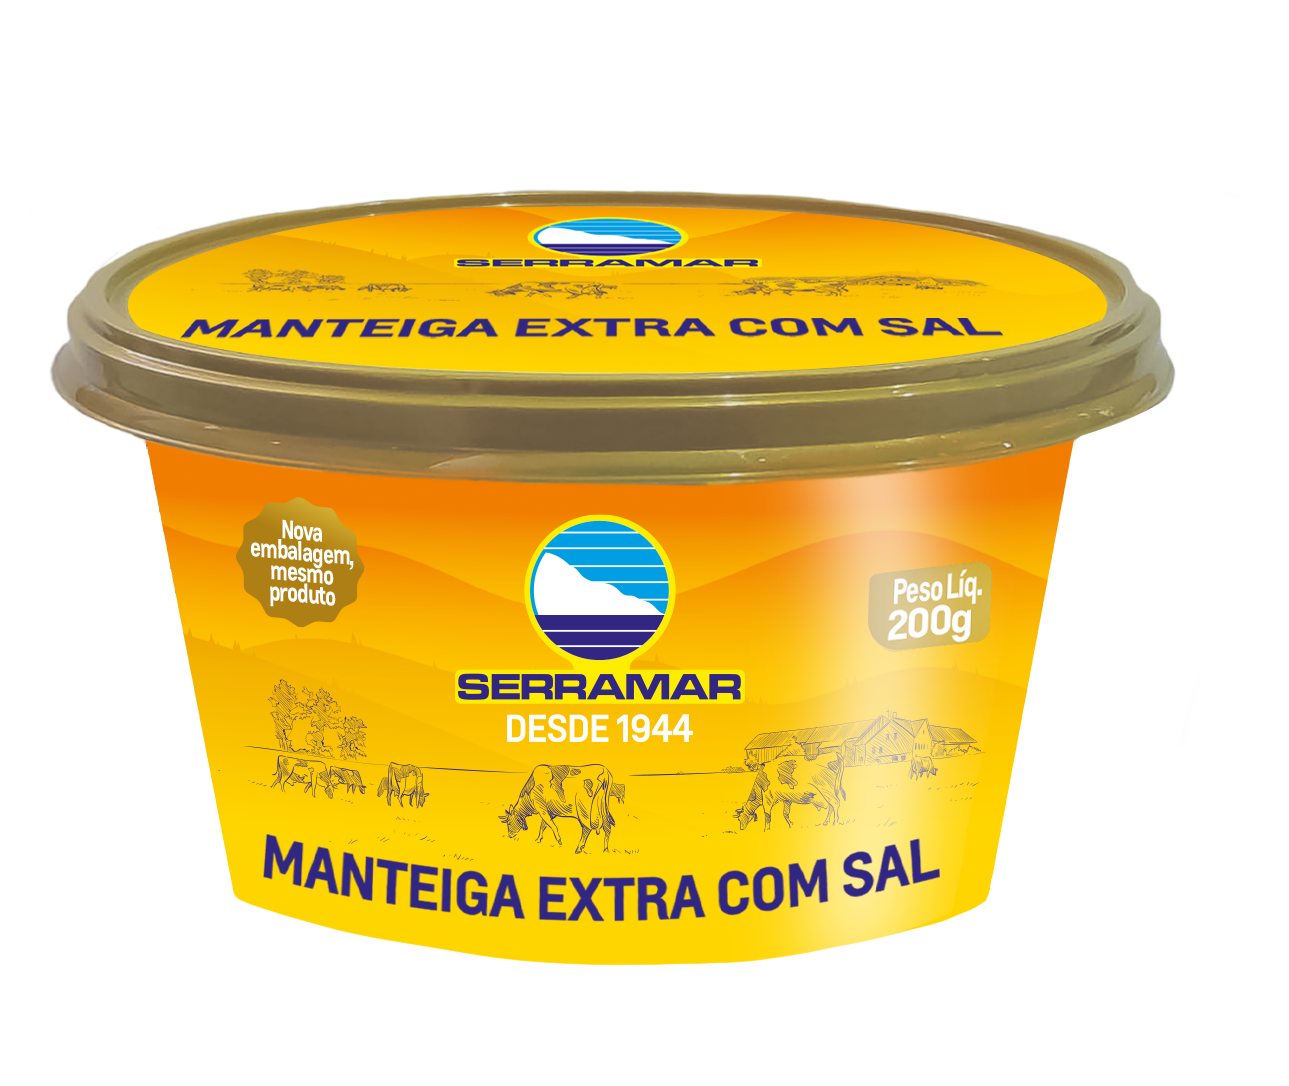 Manteiga Extra com Sal Serramar